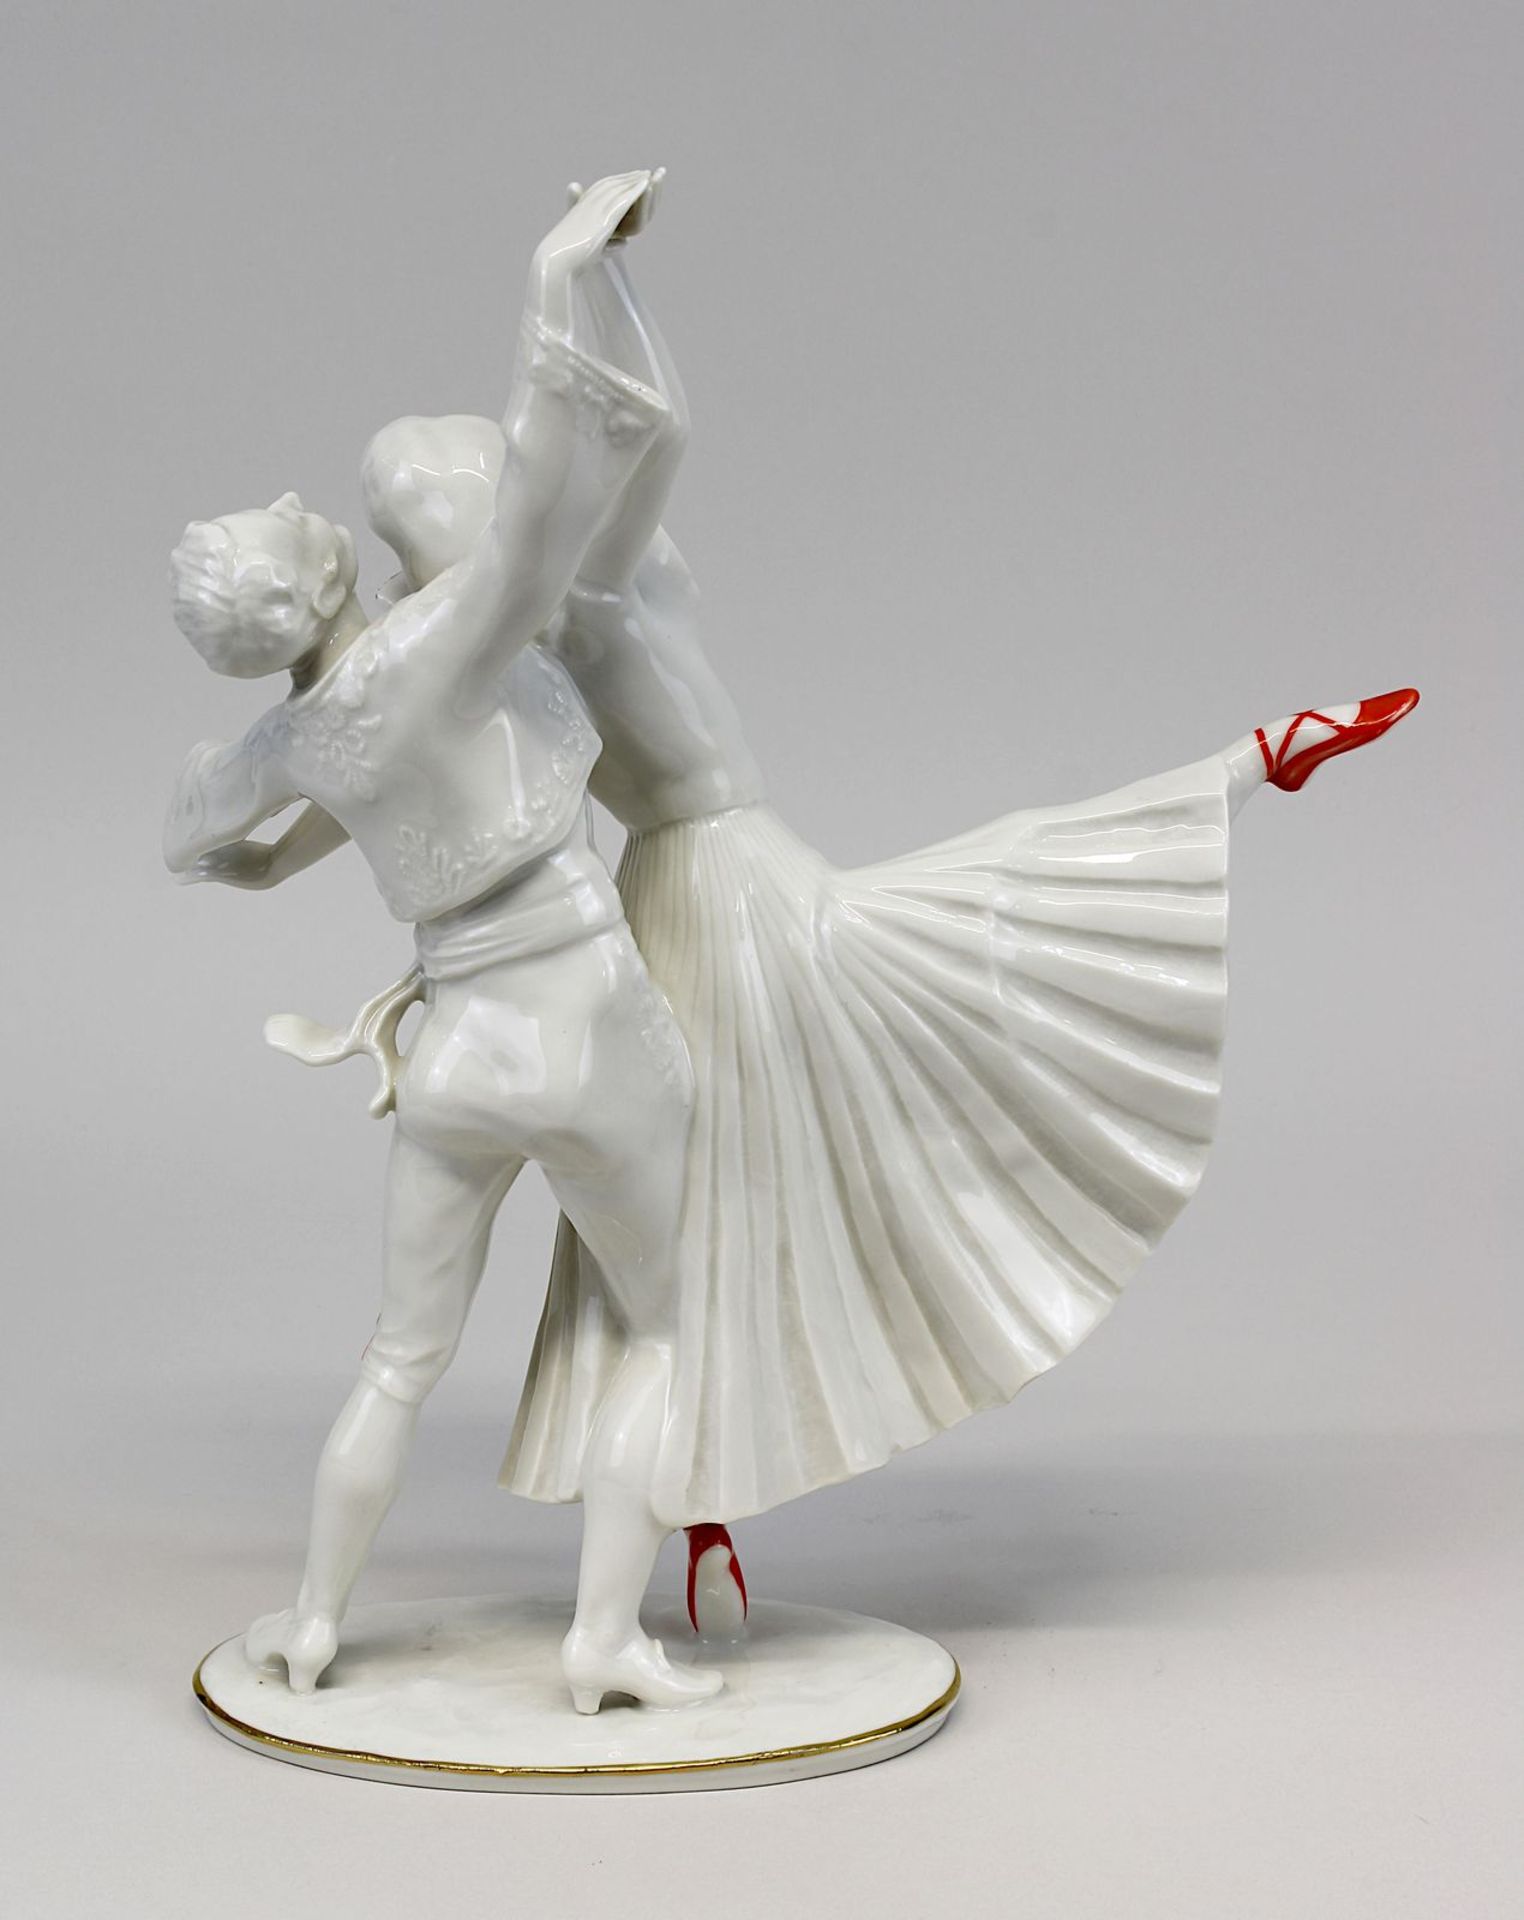 Hutschenreuther Porzellan-Tanzfigur Die roten Schuhe, Entwurf Carl Werner um 1930, ausgeformt - Image 2 of 2